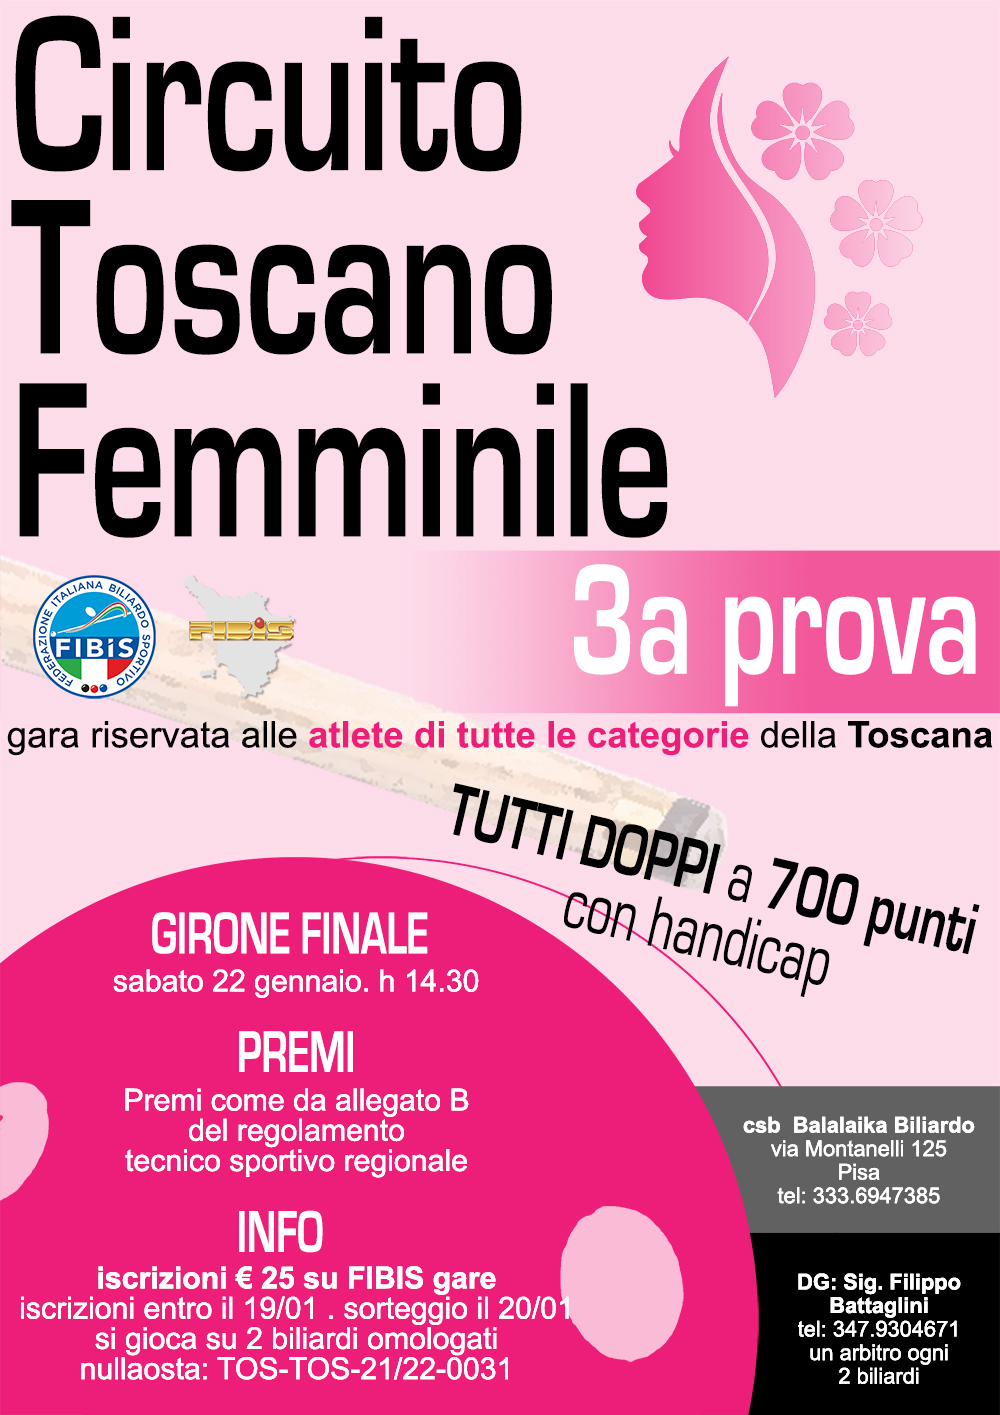 Circuito Toscano Femminile - 3° Prova